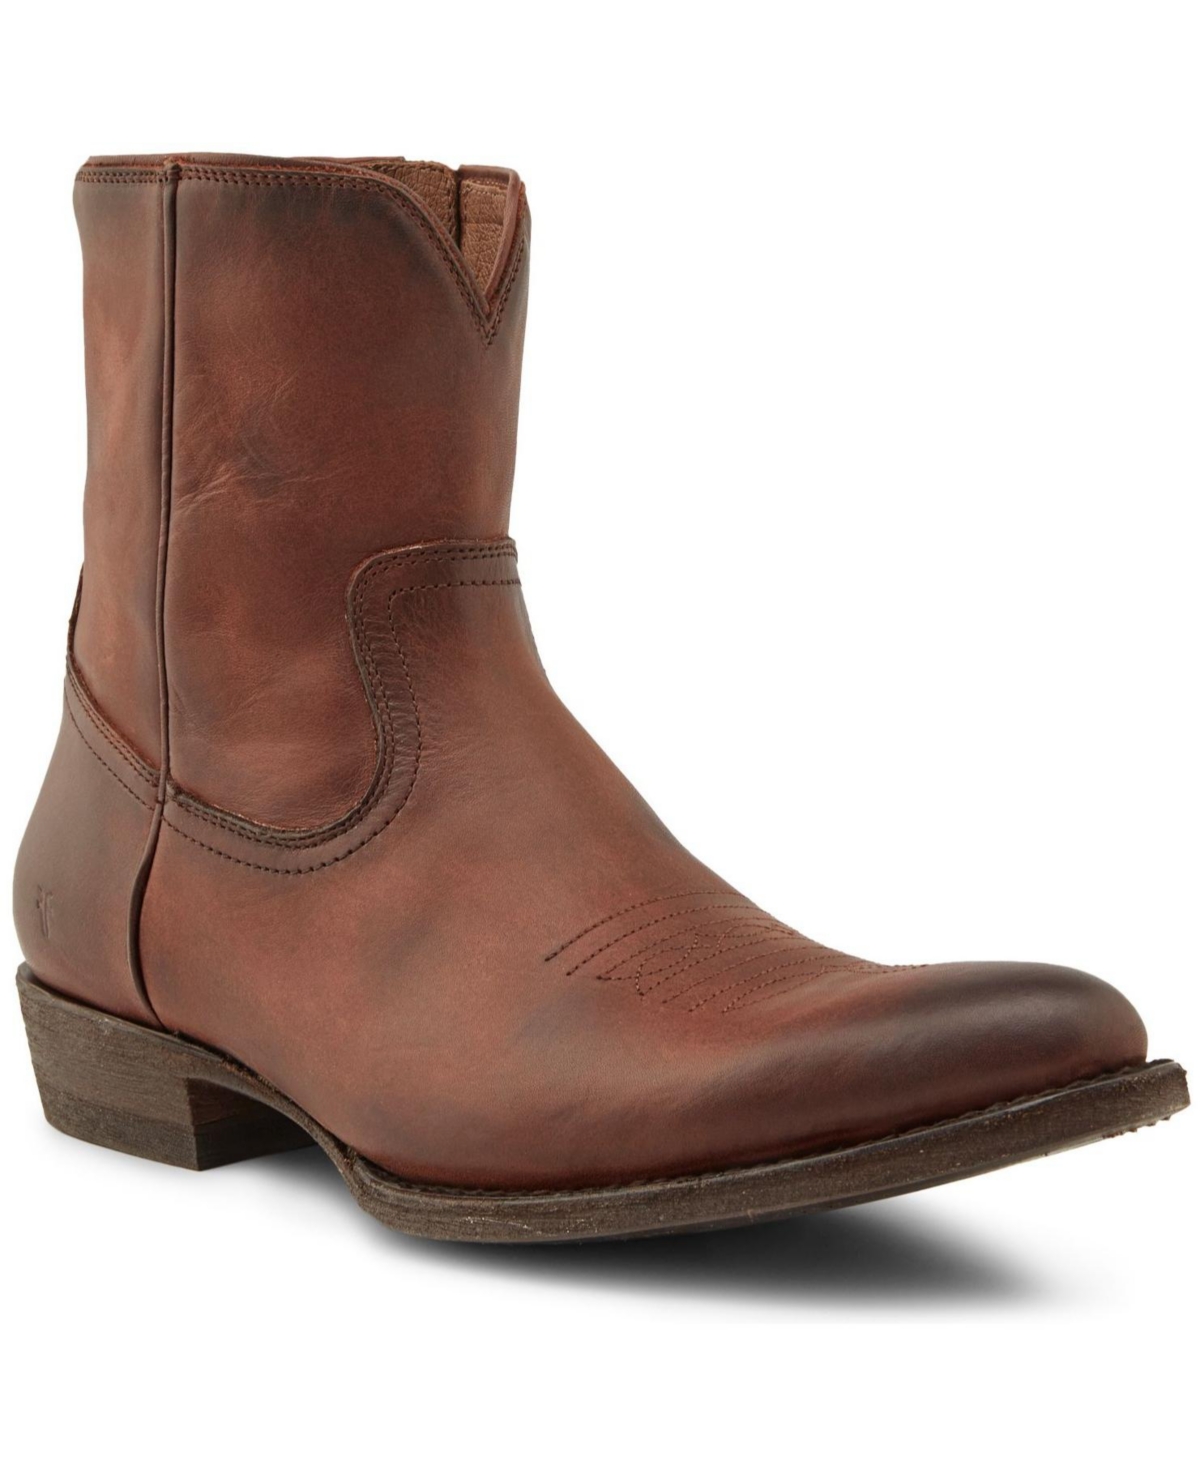 Men's Austin Inside zip Boots - Cognac Leather